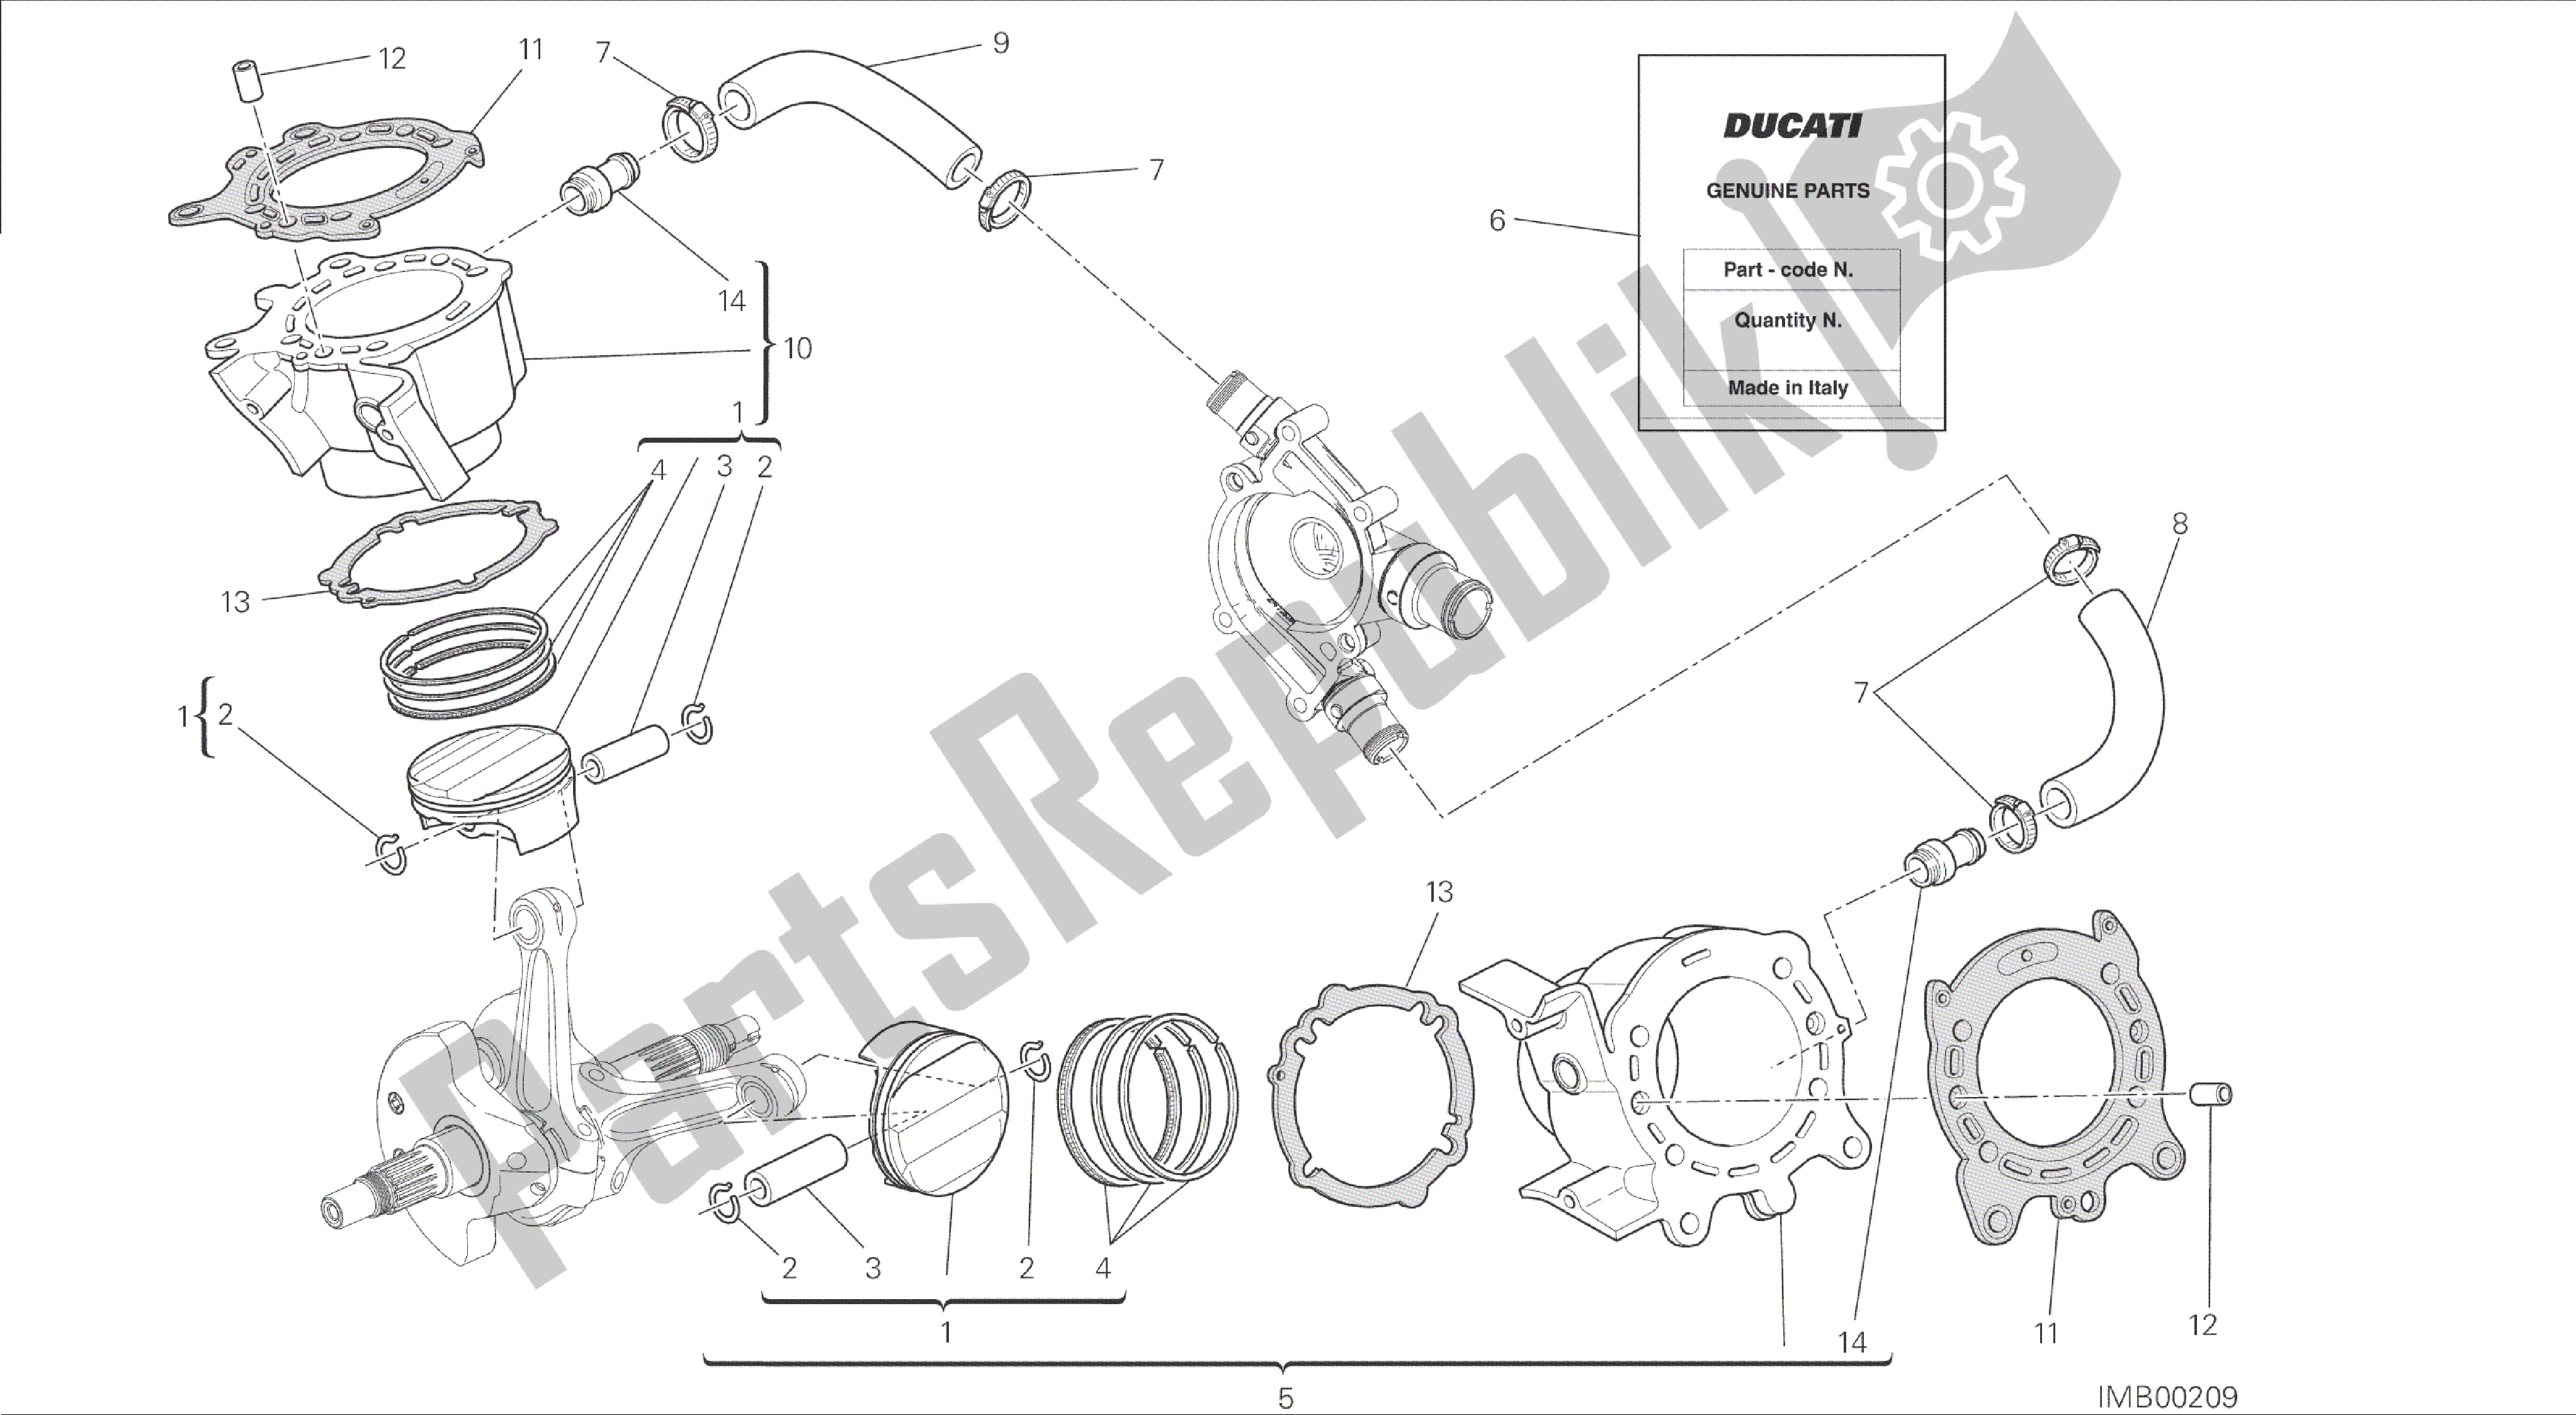 Todas las partes para Dibujo 007 - Cilindros - Pistones [mod: Dvl] Motor De Grupo de Ducati Diavel 1200 2015